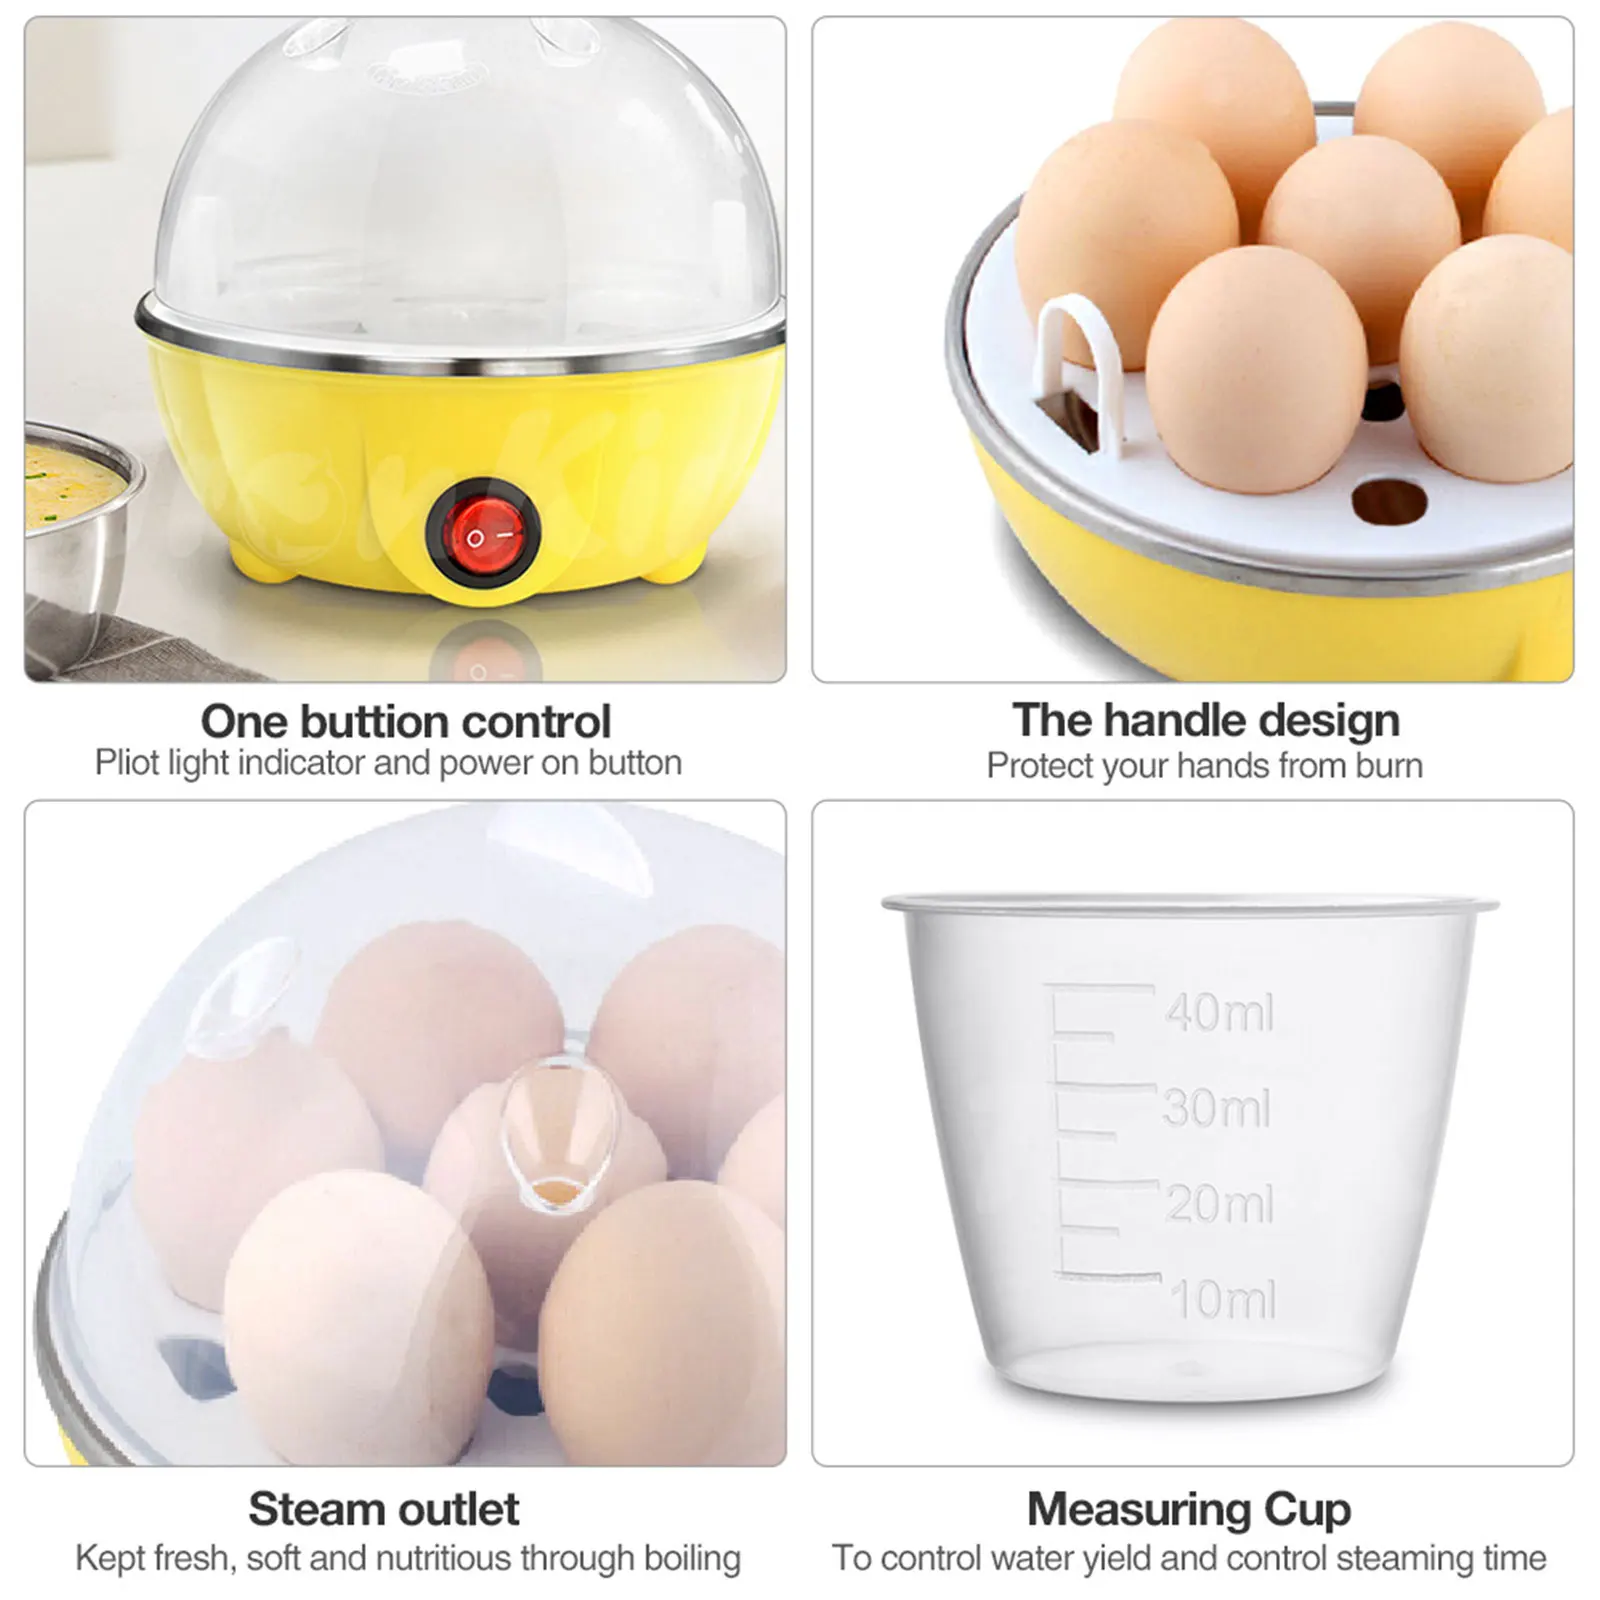 Мини-электрический бойлер для яиц с автоматическим отключением питания, 2-слойная пароварка для яичного крема с мерным стаканчиком, кухонные принадлежности для приготовления пищи, штепсельная вилка США